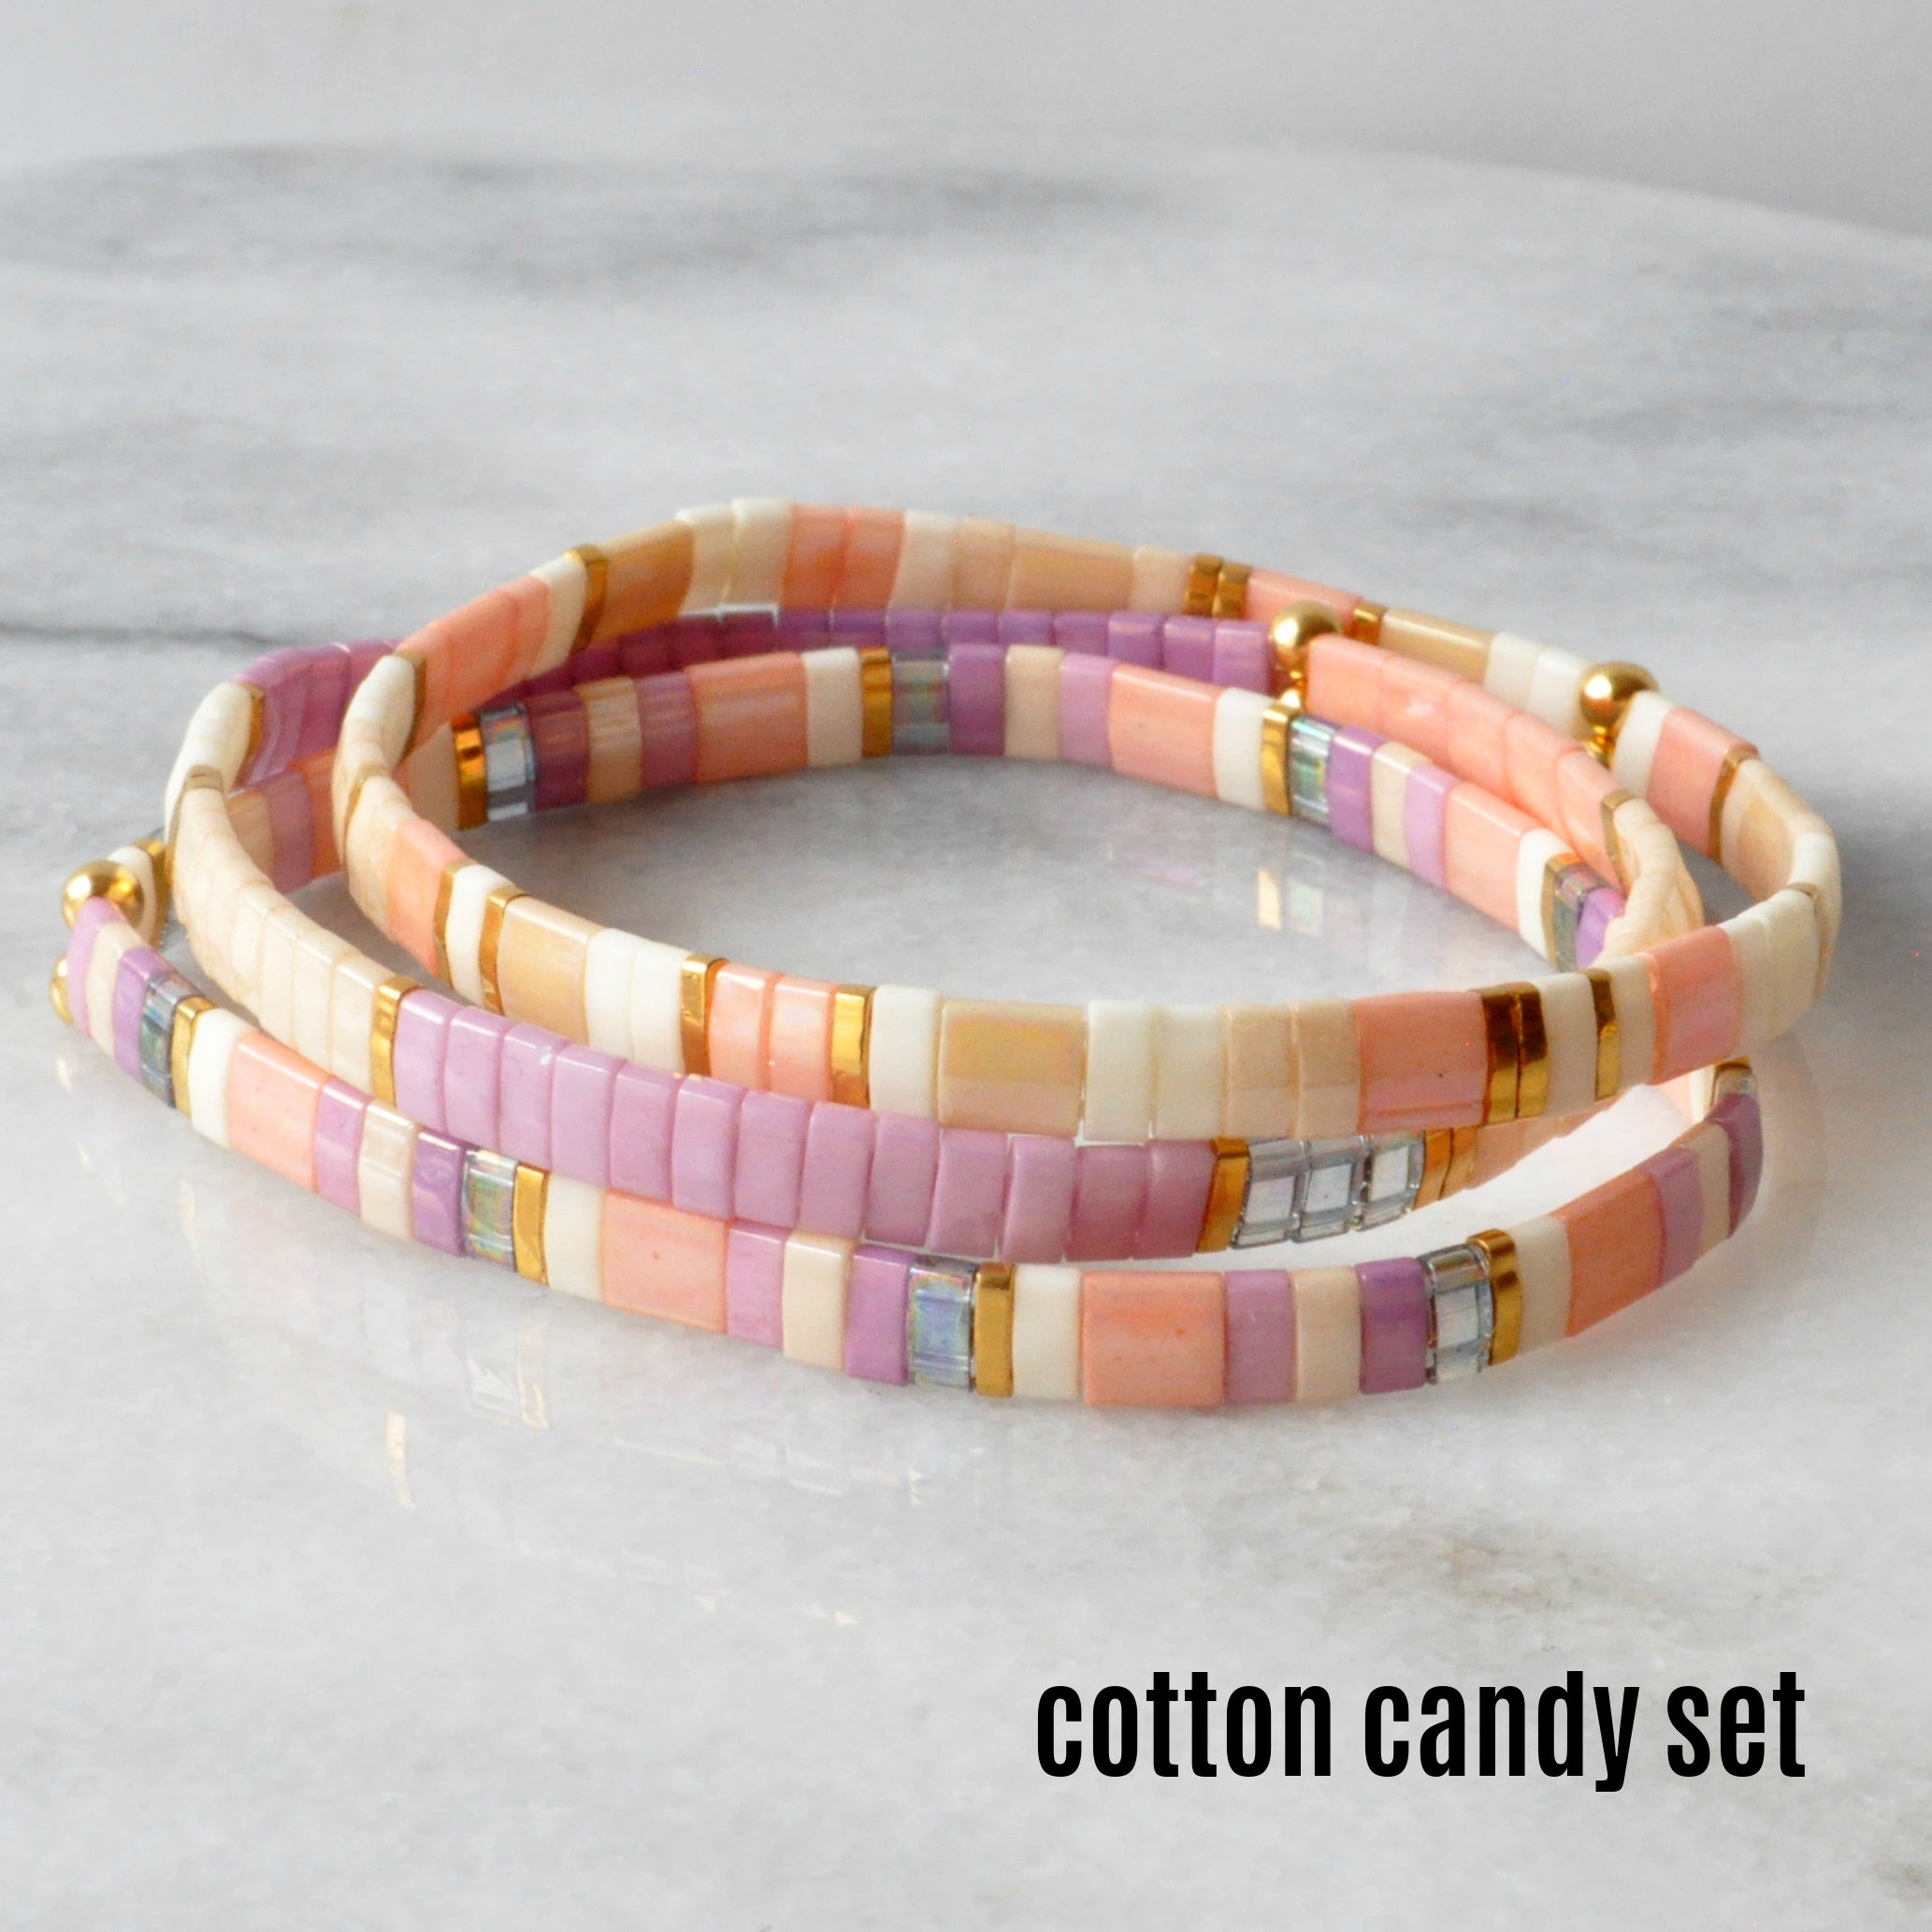 Libby & Smee stretch tile bracelet sets